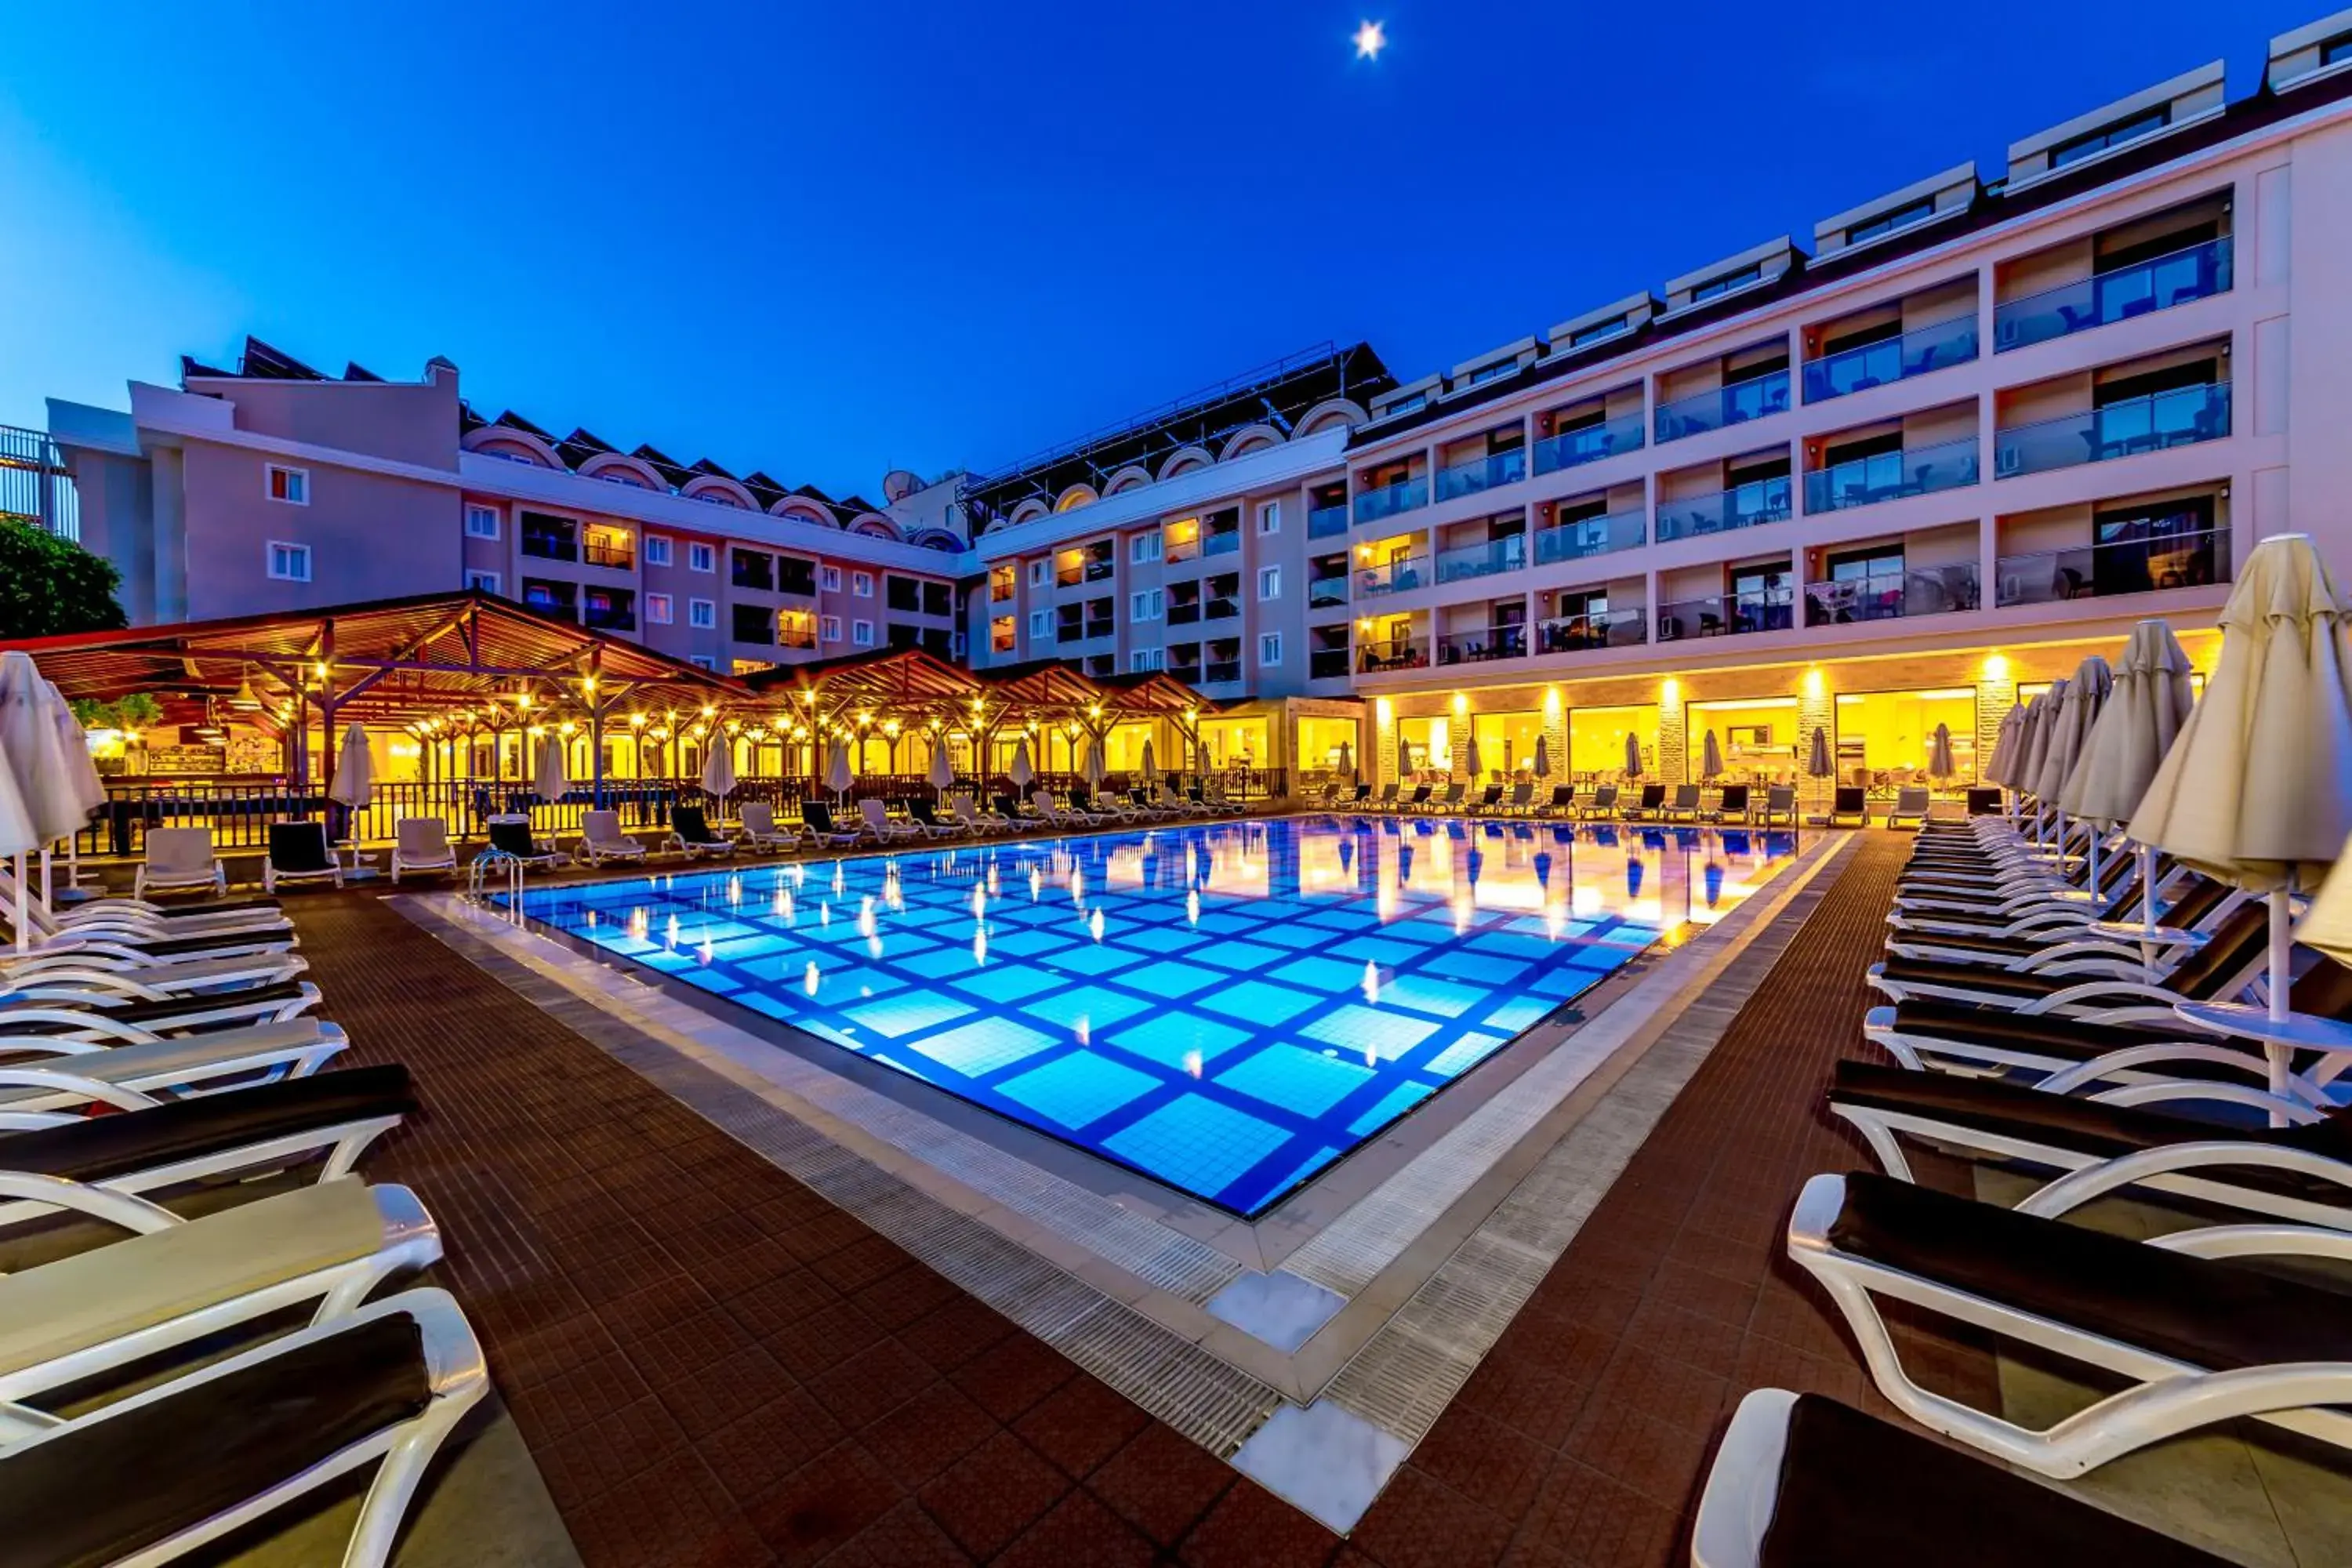 Swimming Pool in Julian Club Hotel - All Inclusive